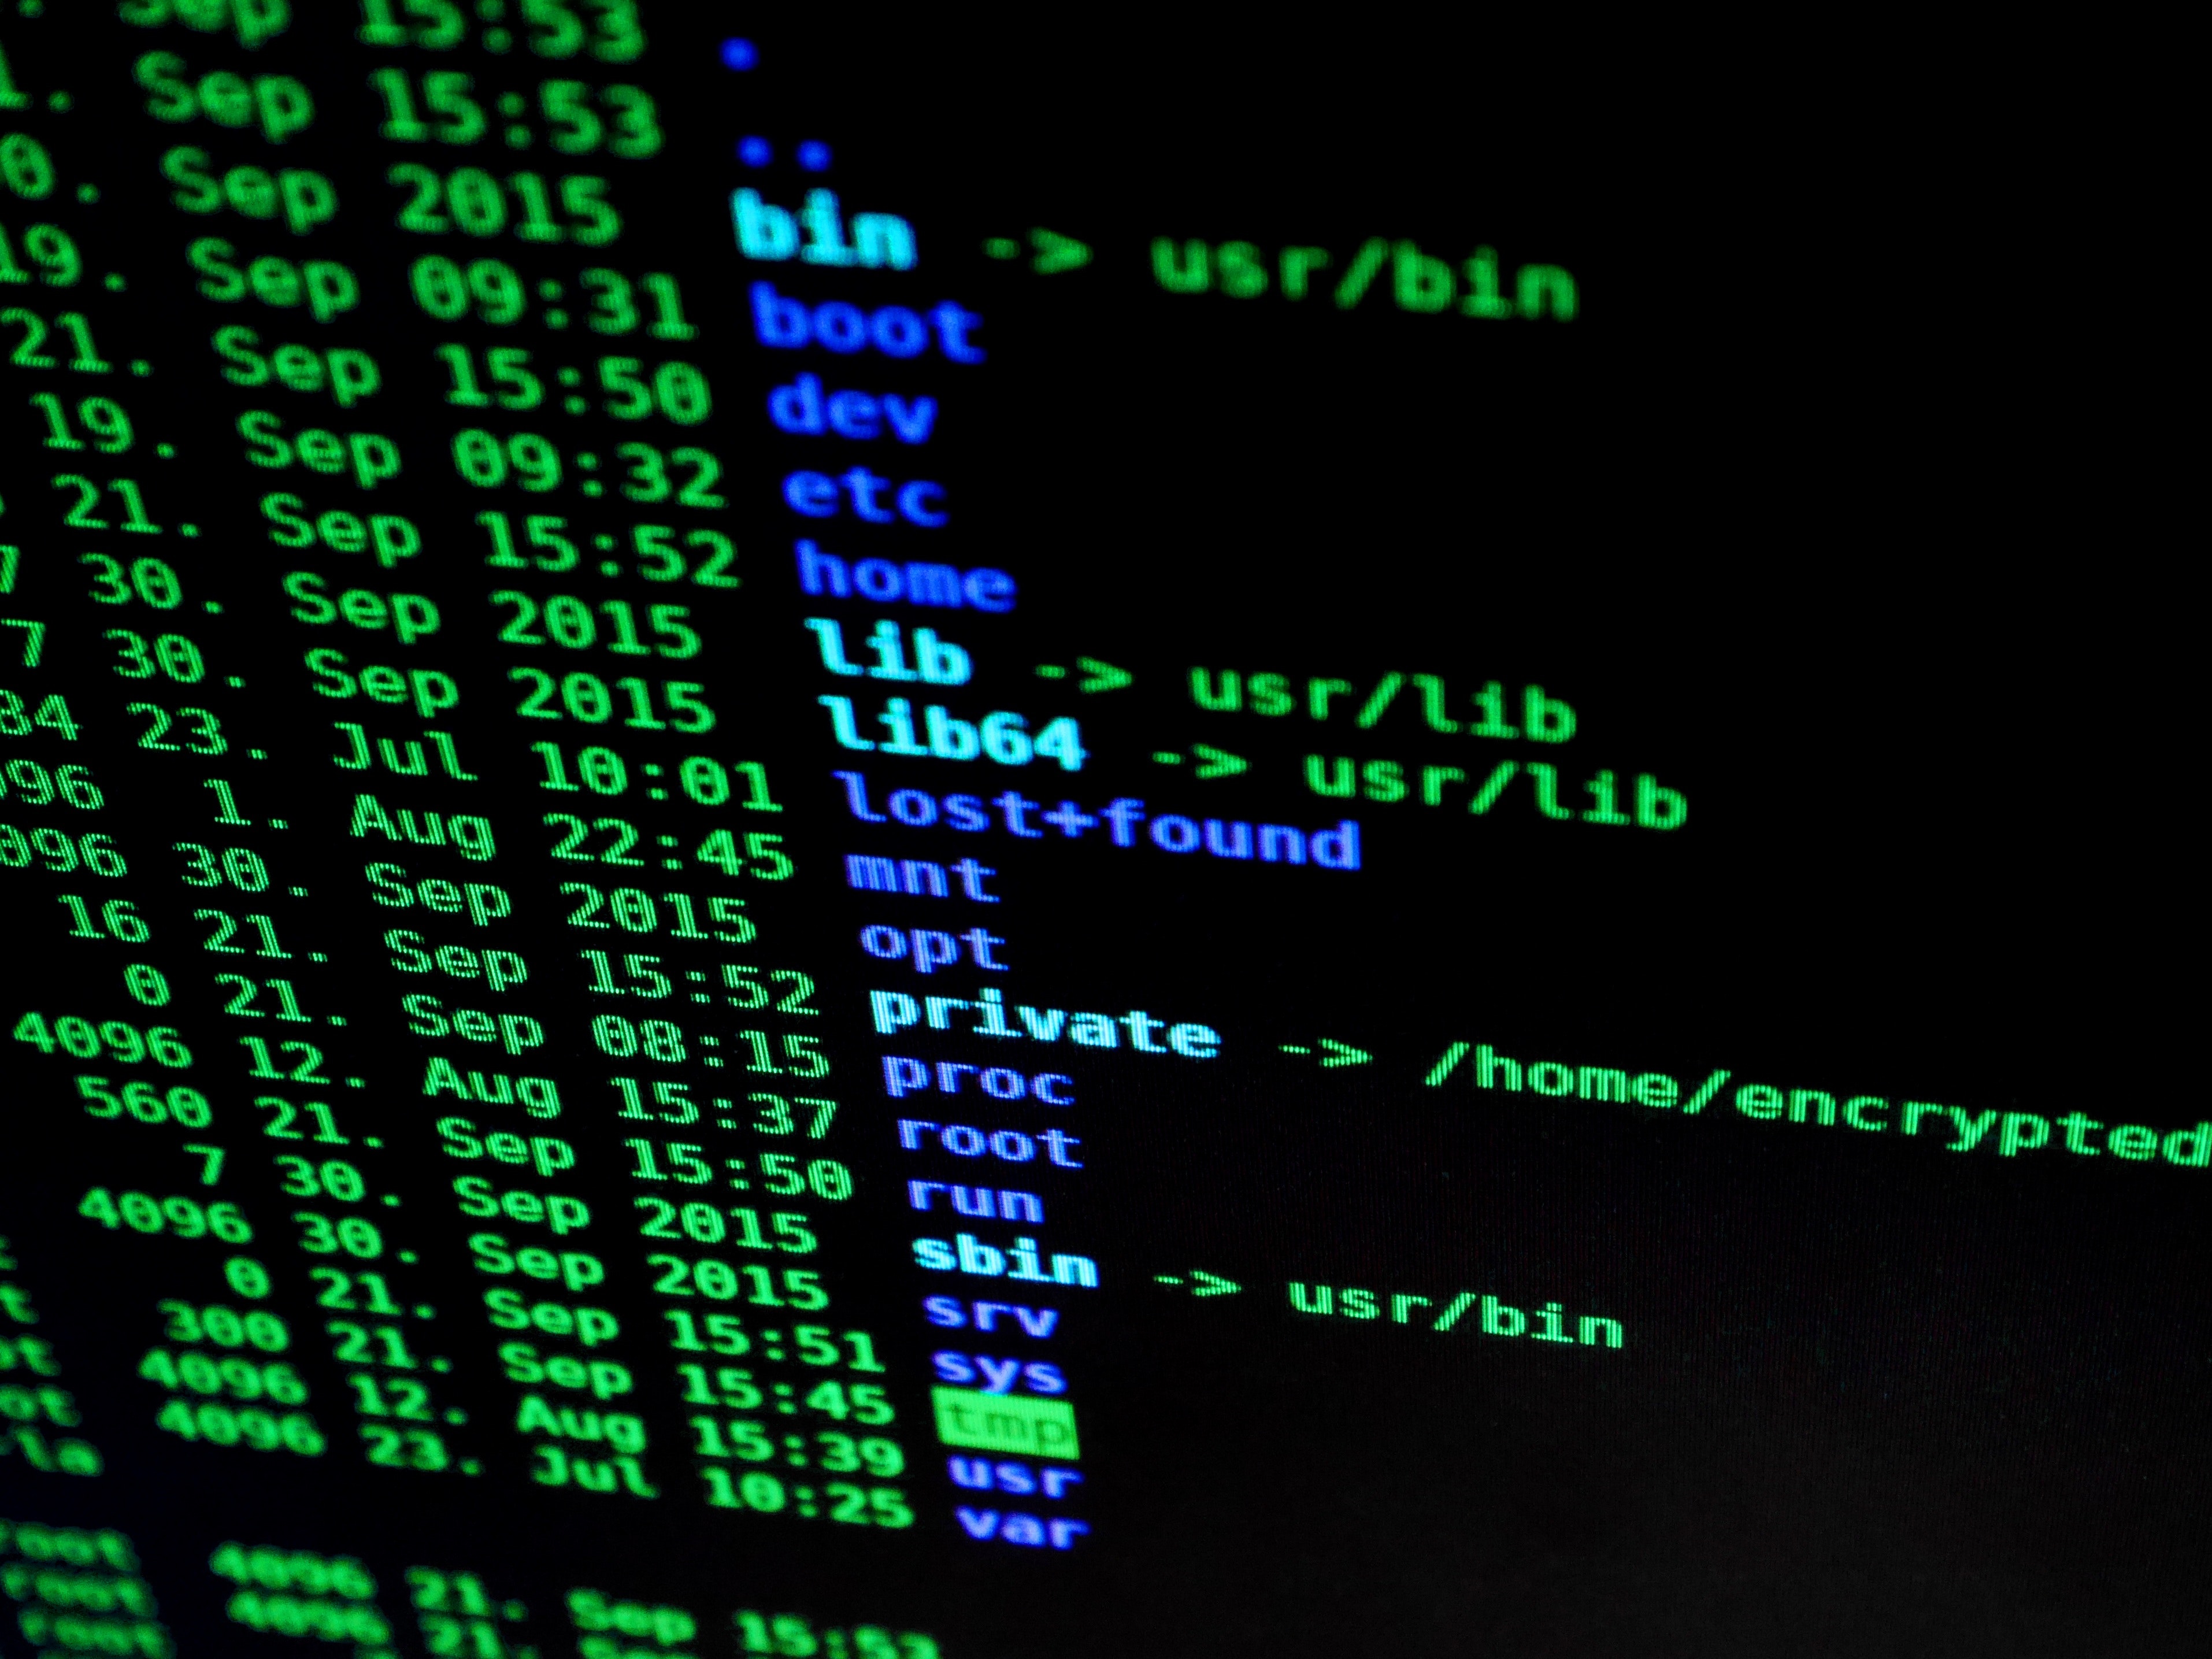 hackers have stolen vast amounts of data